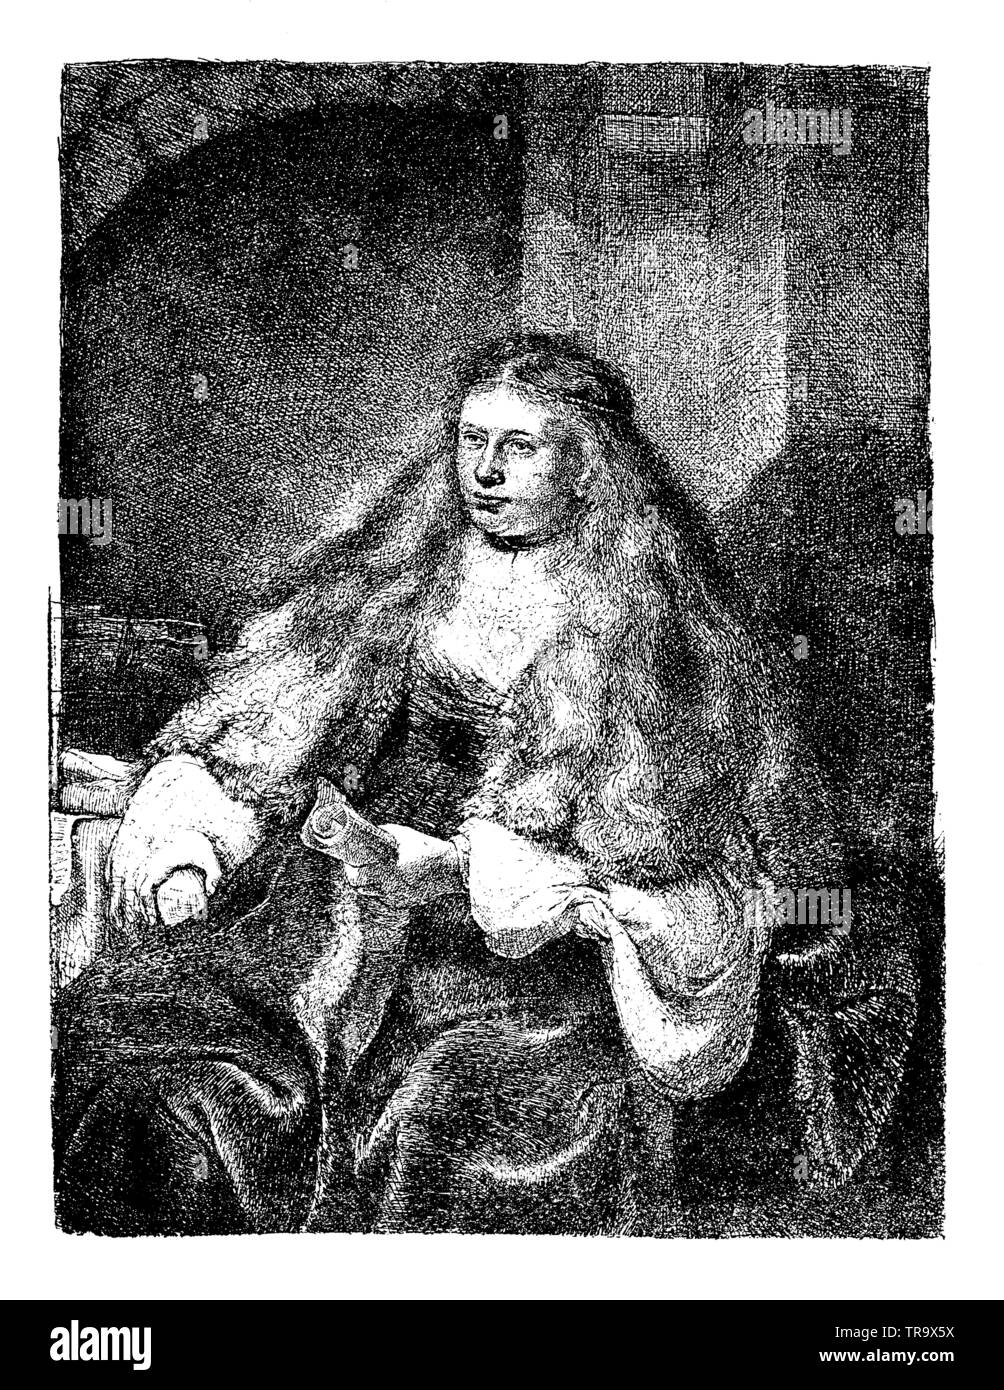 La novia judía. Una rica mujer judía. Después de un grabado en cobre de Rembrandt, , Rembrandt van Rijn (1606-1696) (libro de la historia de la religión, 1923) Foto de stock